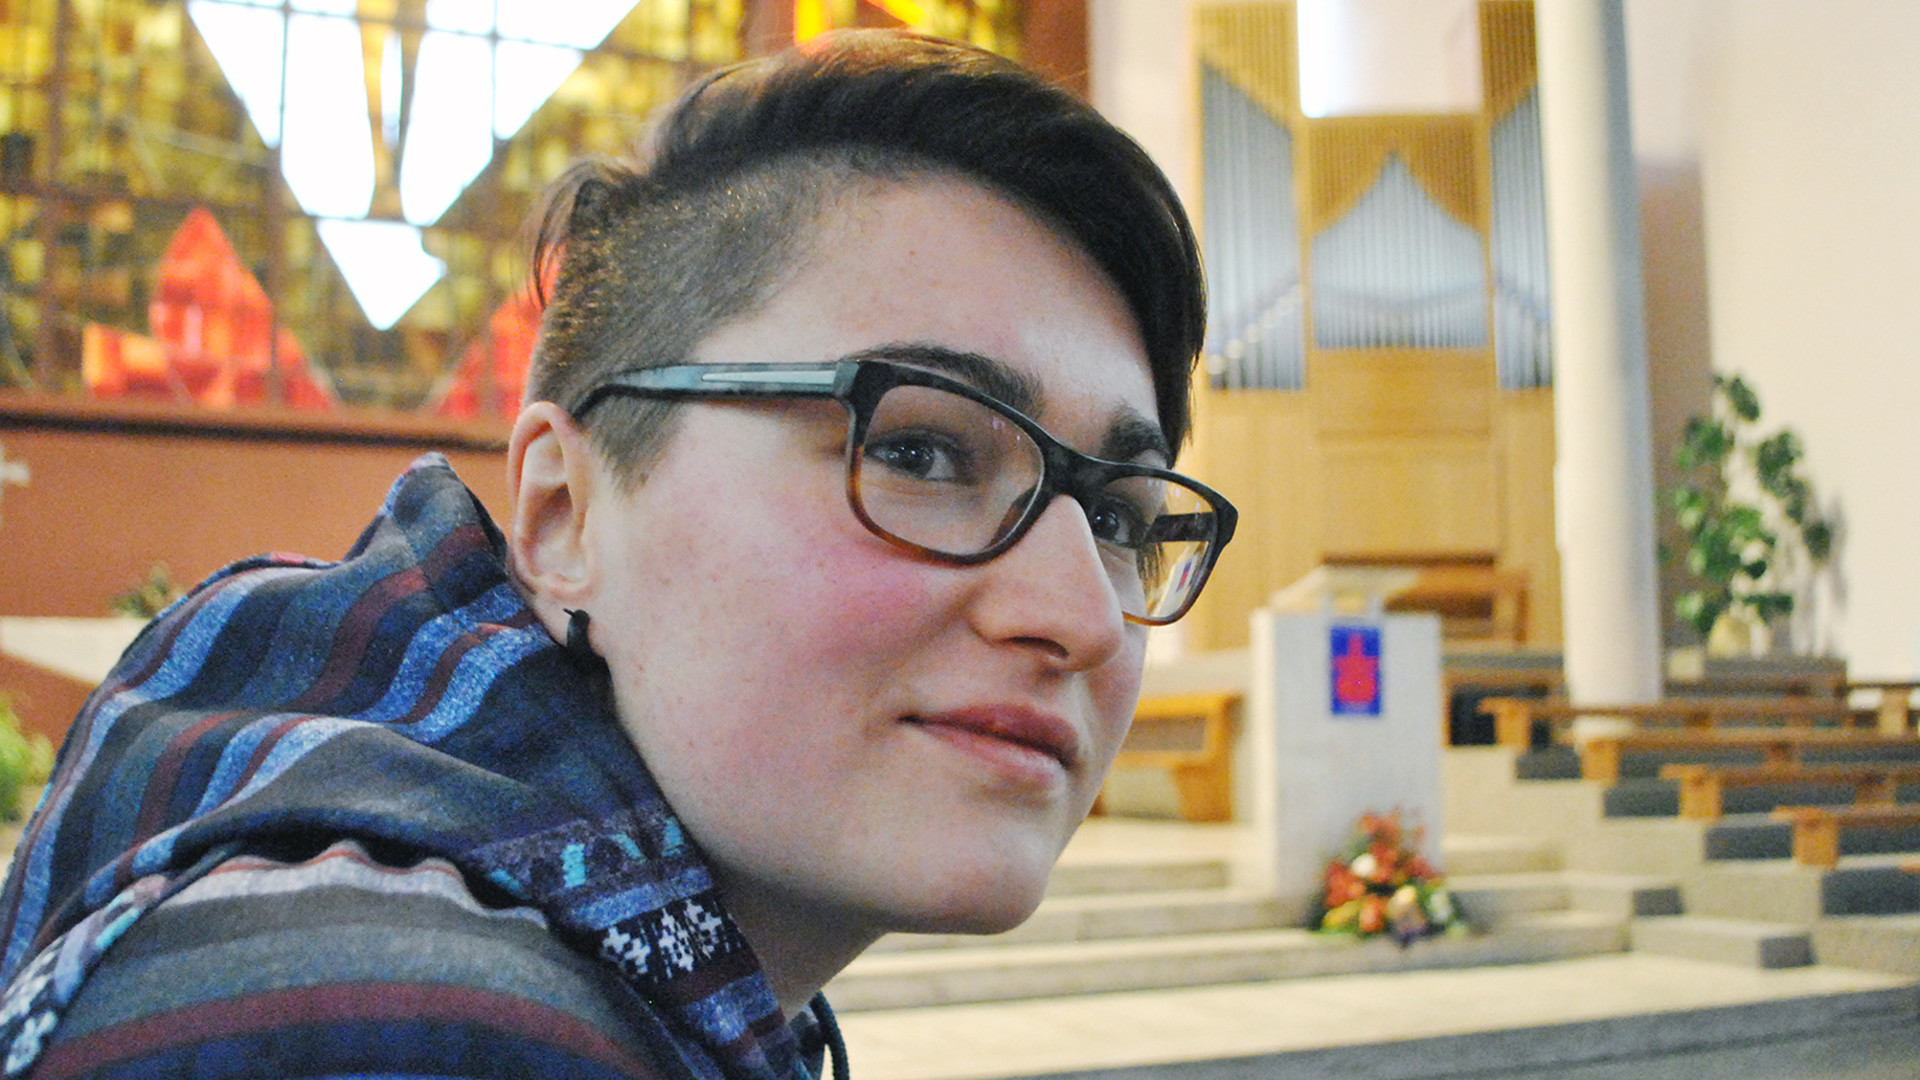 Clémentine Dubuis (20) hat im Wallis eine Gruppe für katholische Homosexuelle gegründet